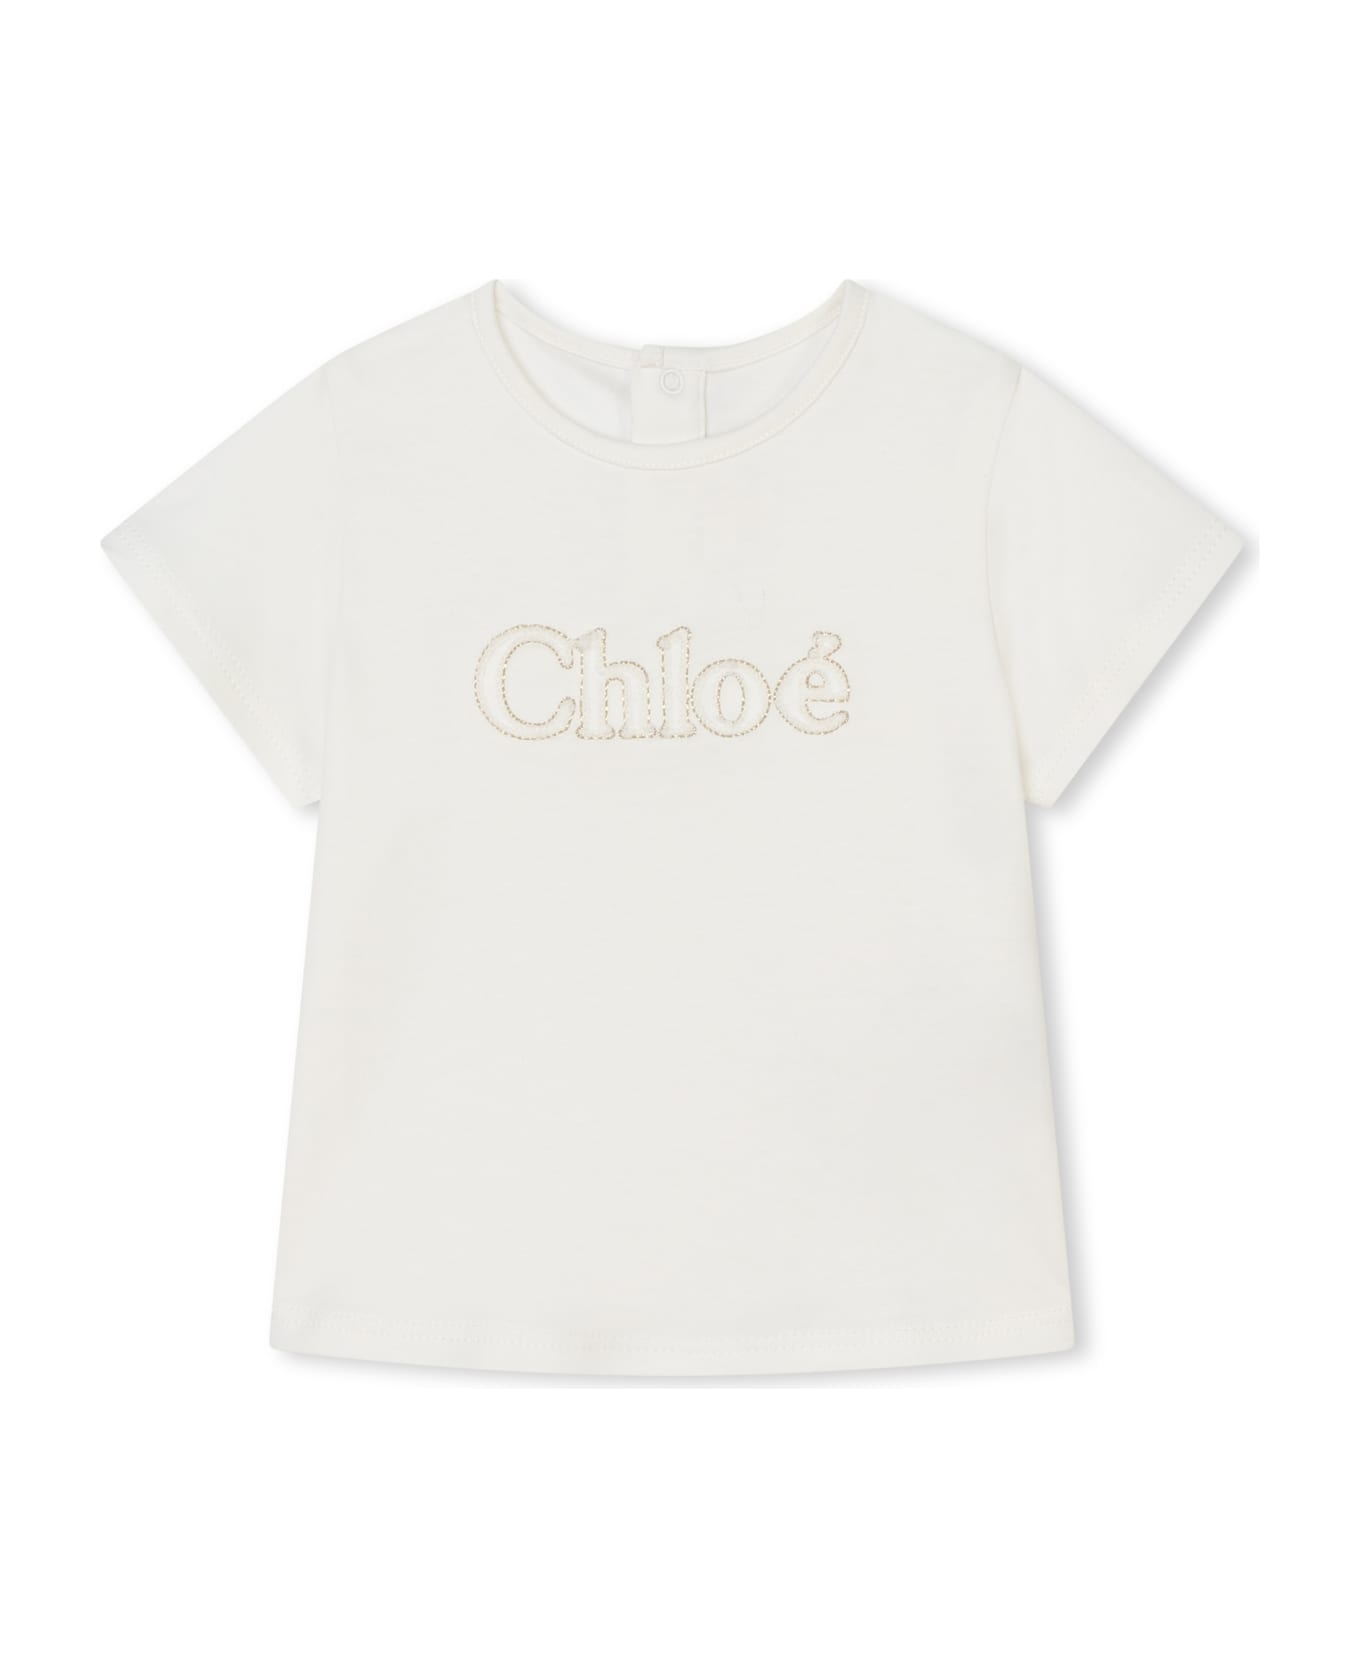 Chloé T-shirt With Print - White